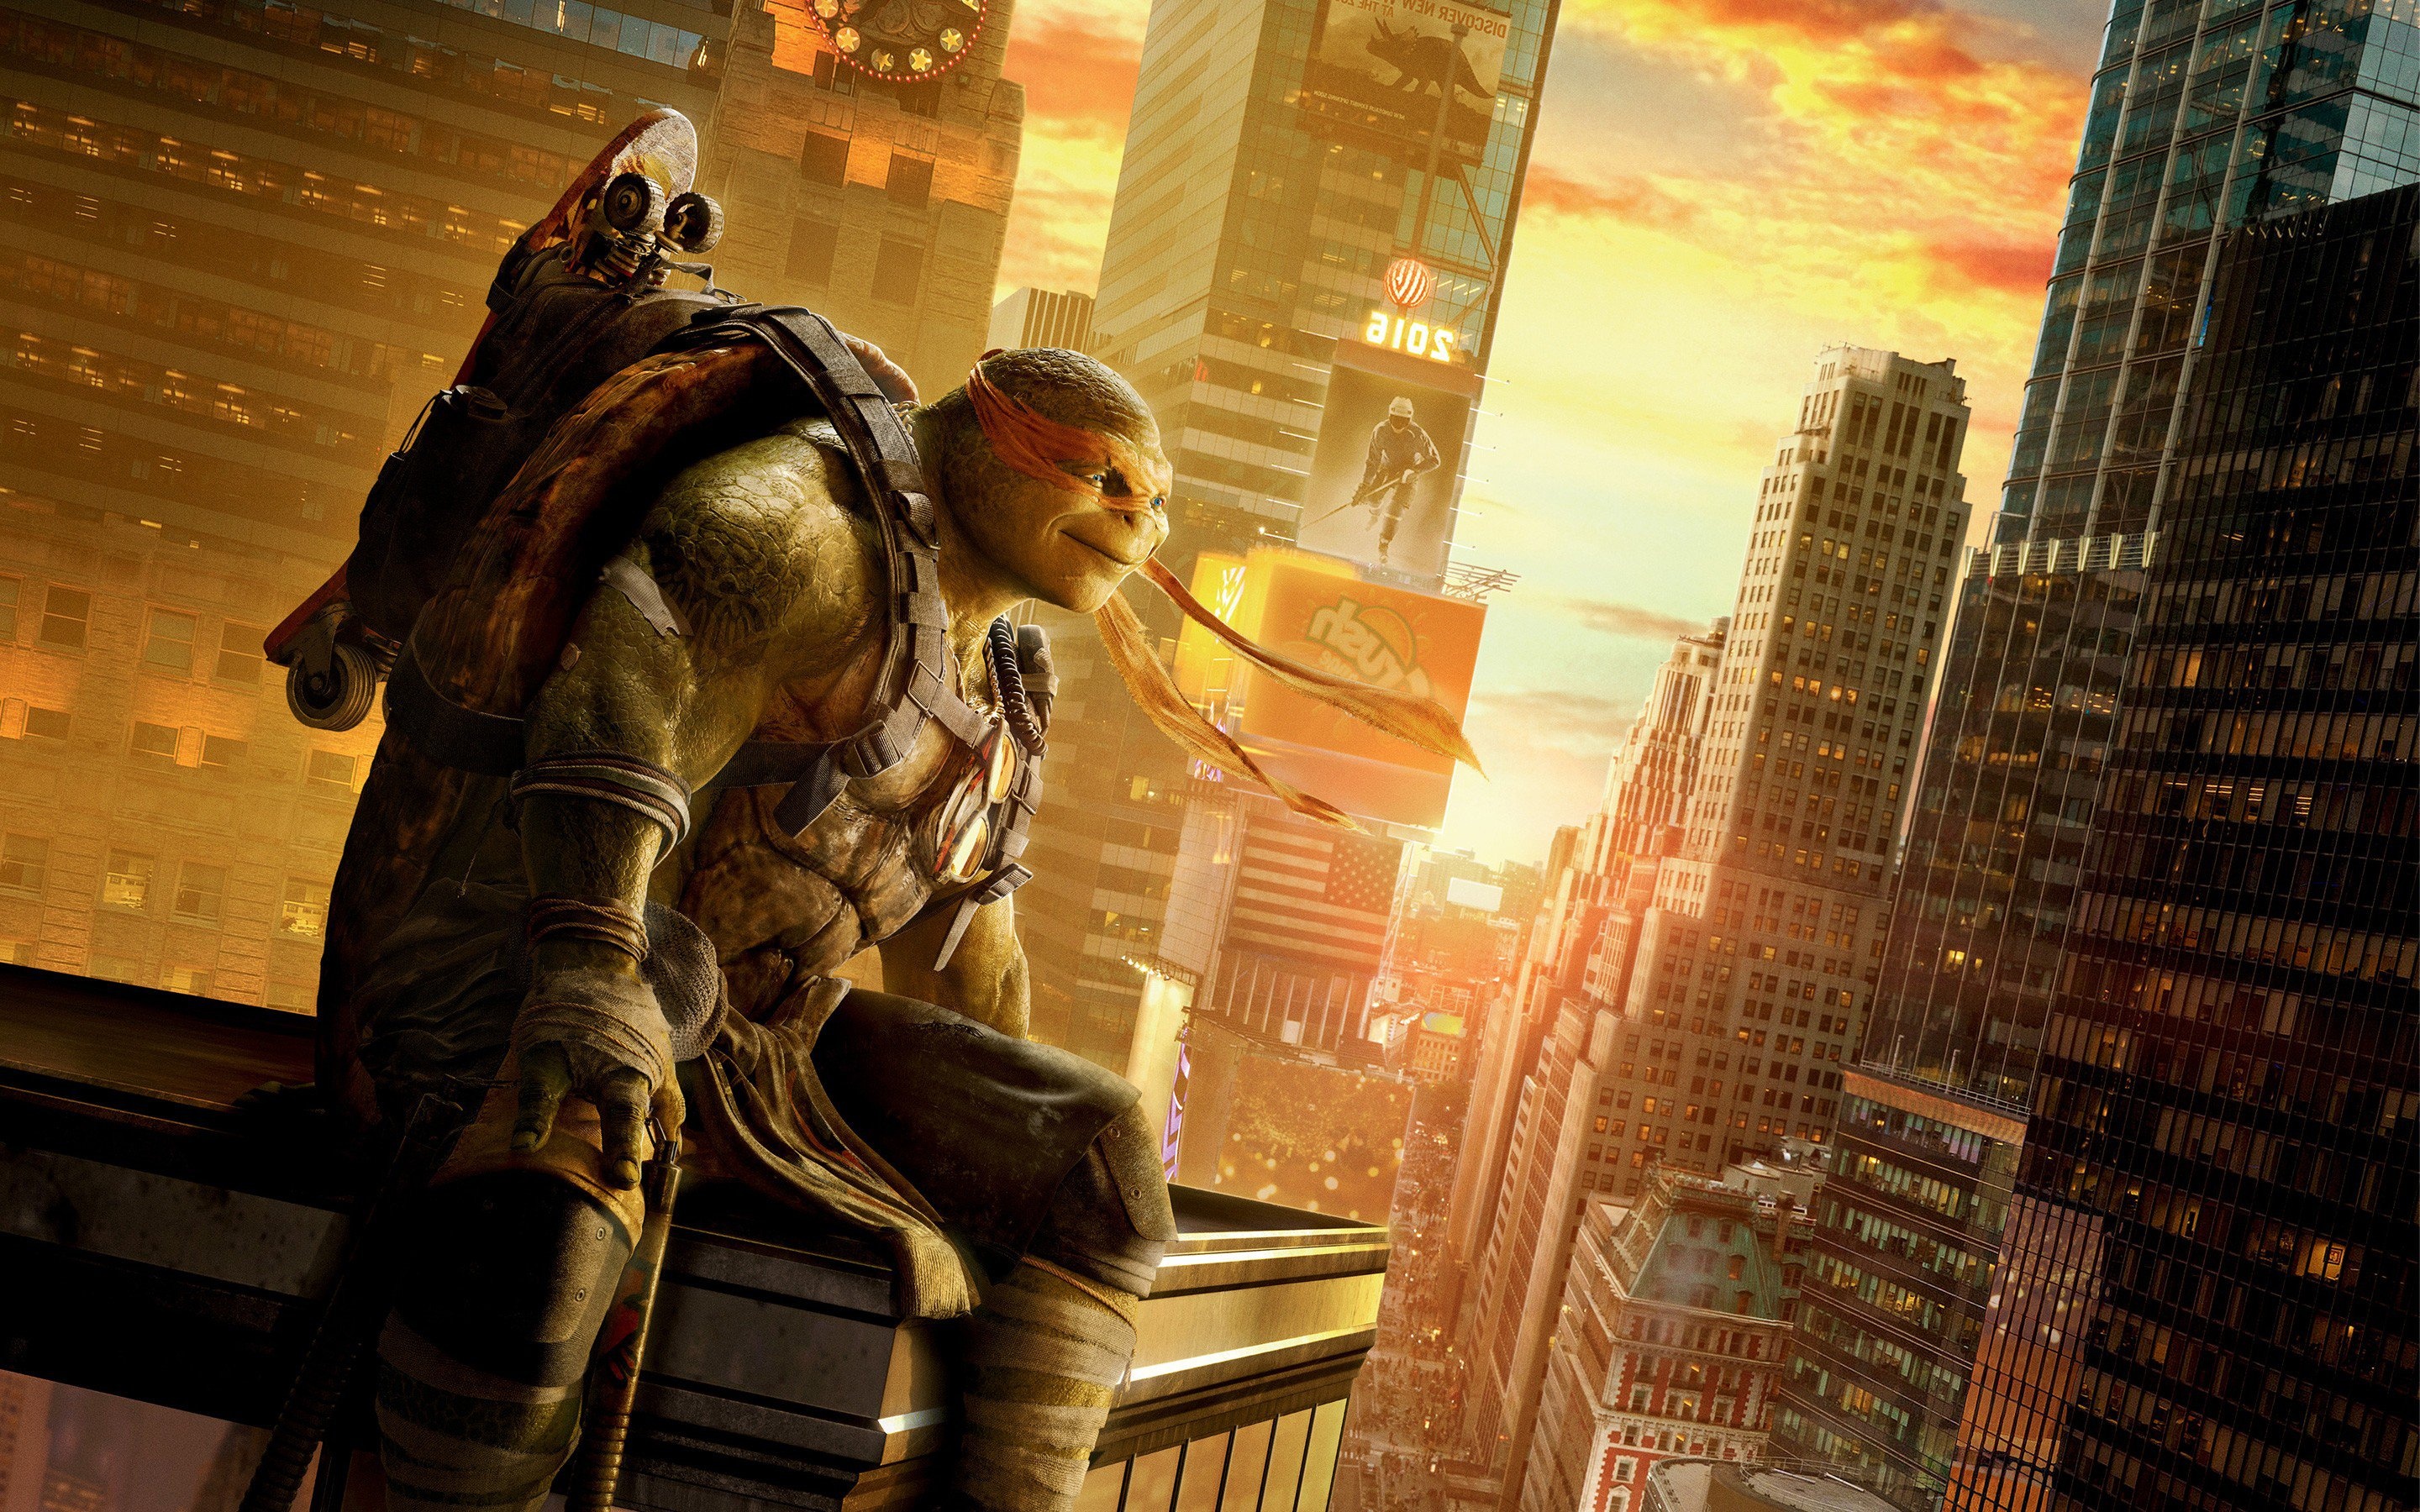 Mutant Ninja Turtles, Movie wallpapers, HD images, Heroes in half shell, 2880x1800 HD Desktop